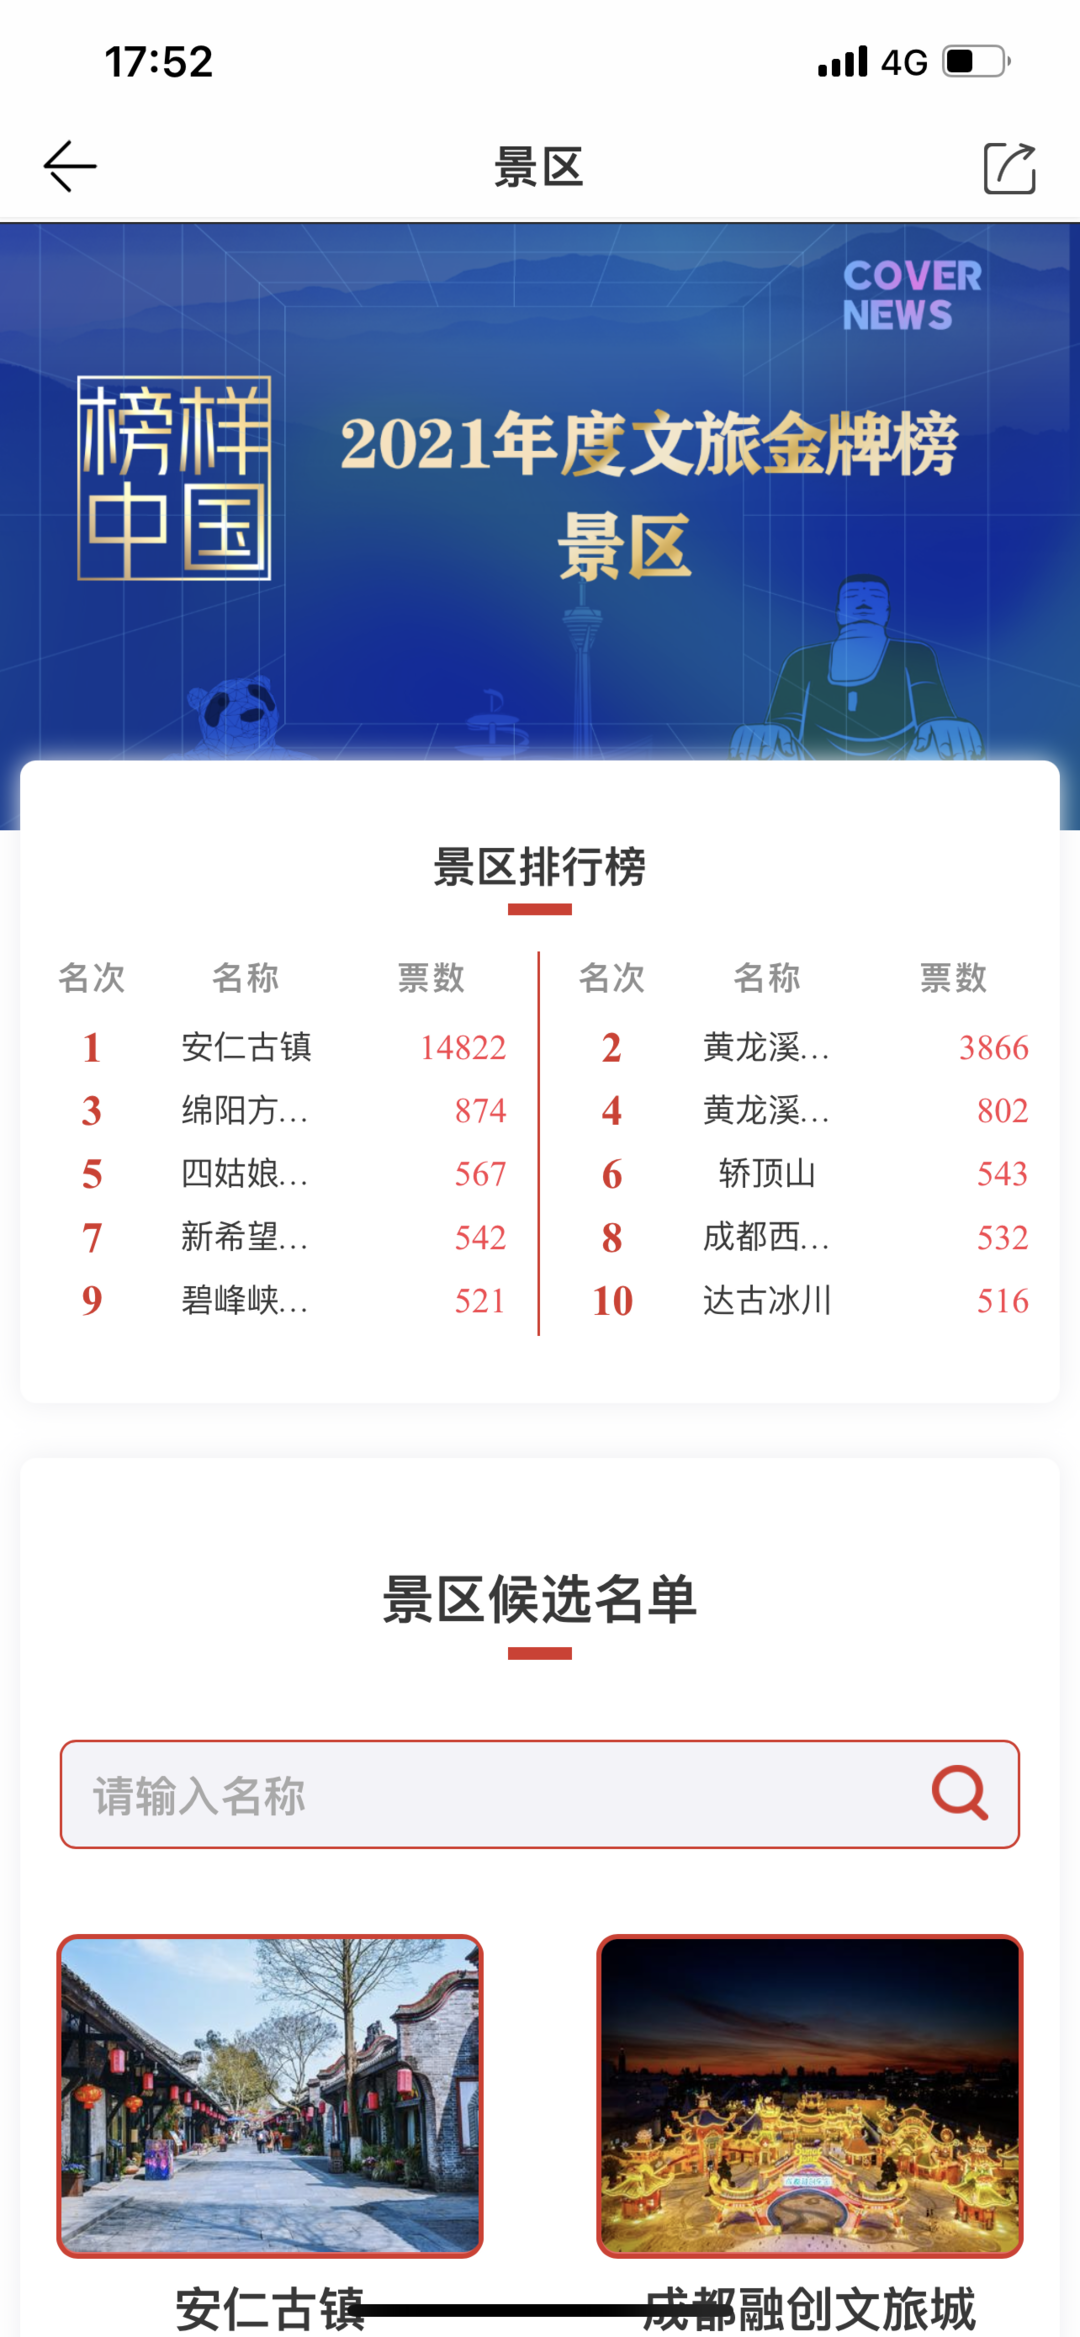 “榜样中国·2021年度文旅金牌榜”投票火热 安仁古镇、黄龙溪欢乐田园名列前茅